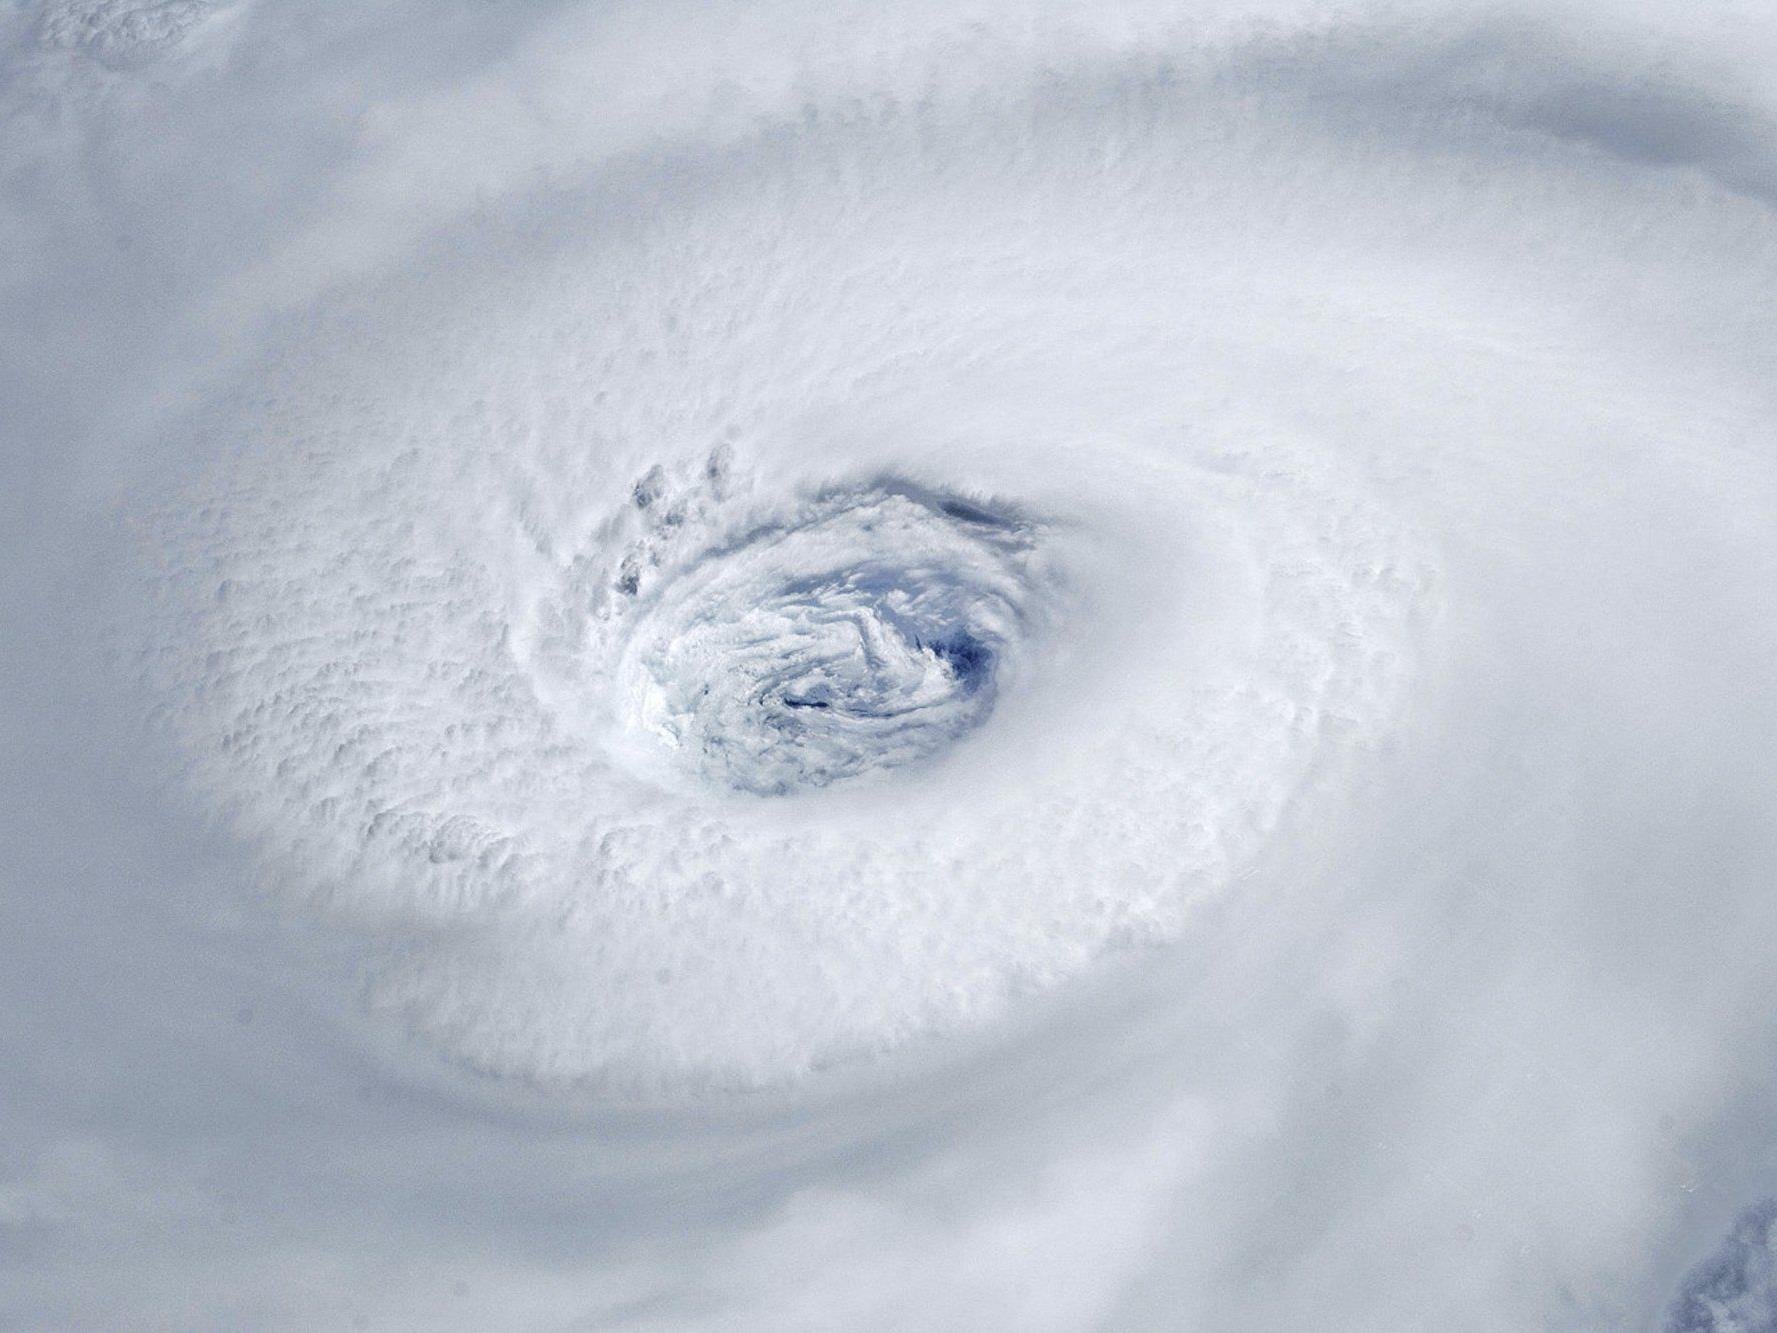 Hurrikane mit weiblichen Namen werden als weniger bedrohlich wahrgenommen - und können deshalb mehr Todesopfer fordern.